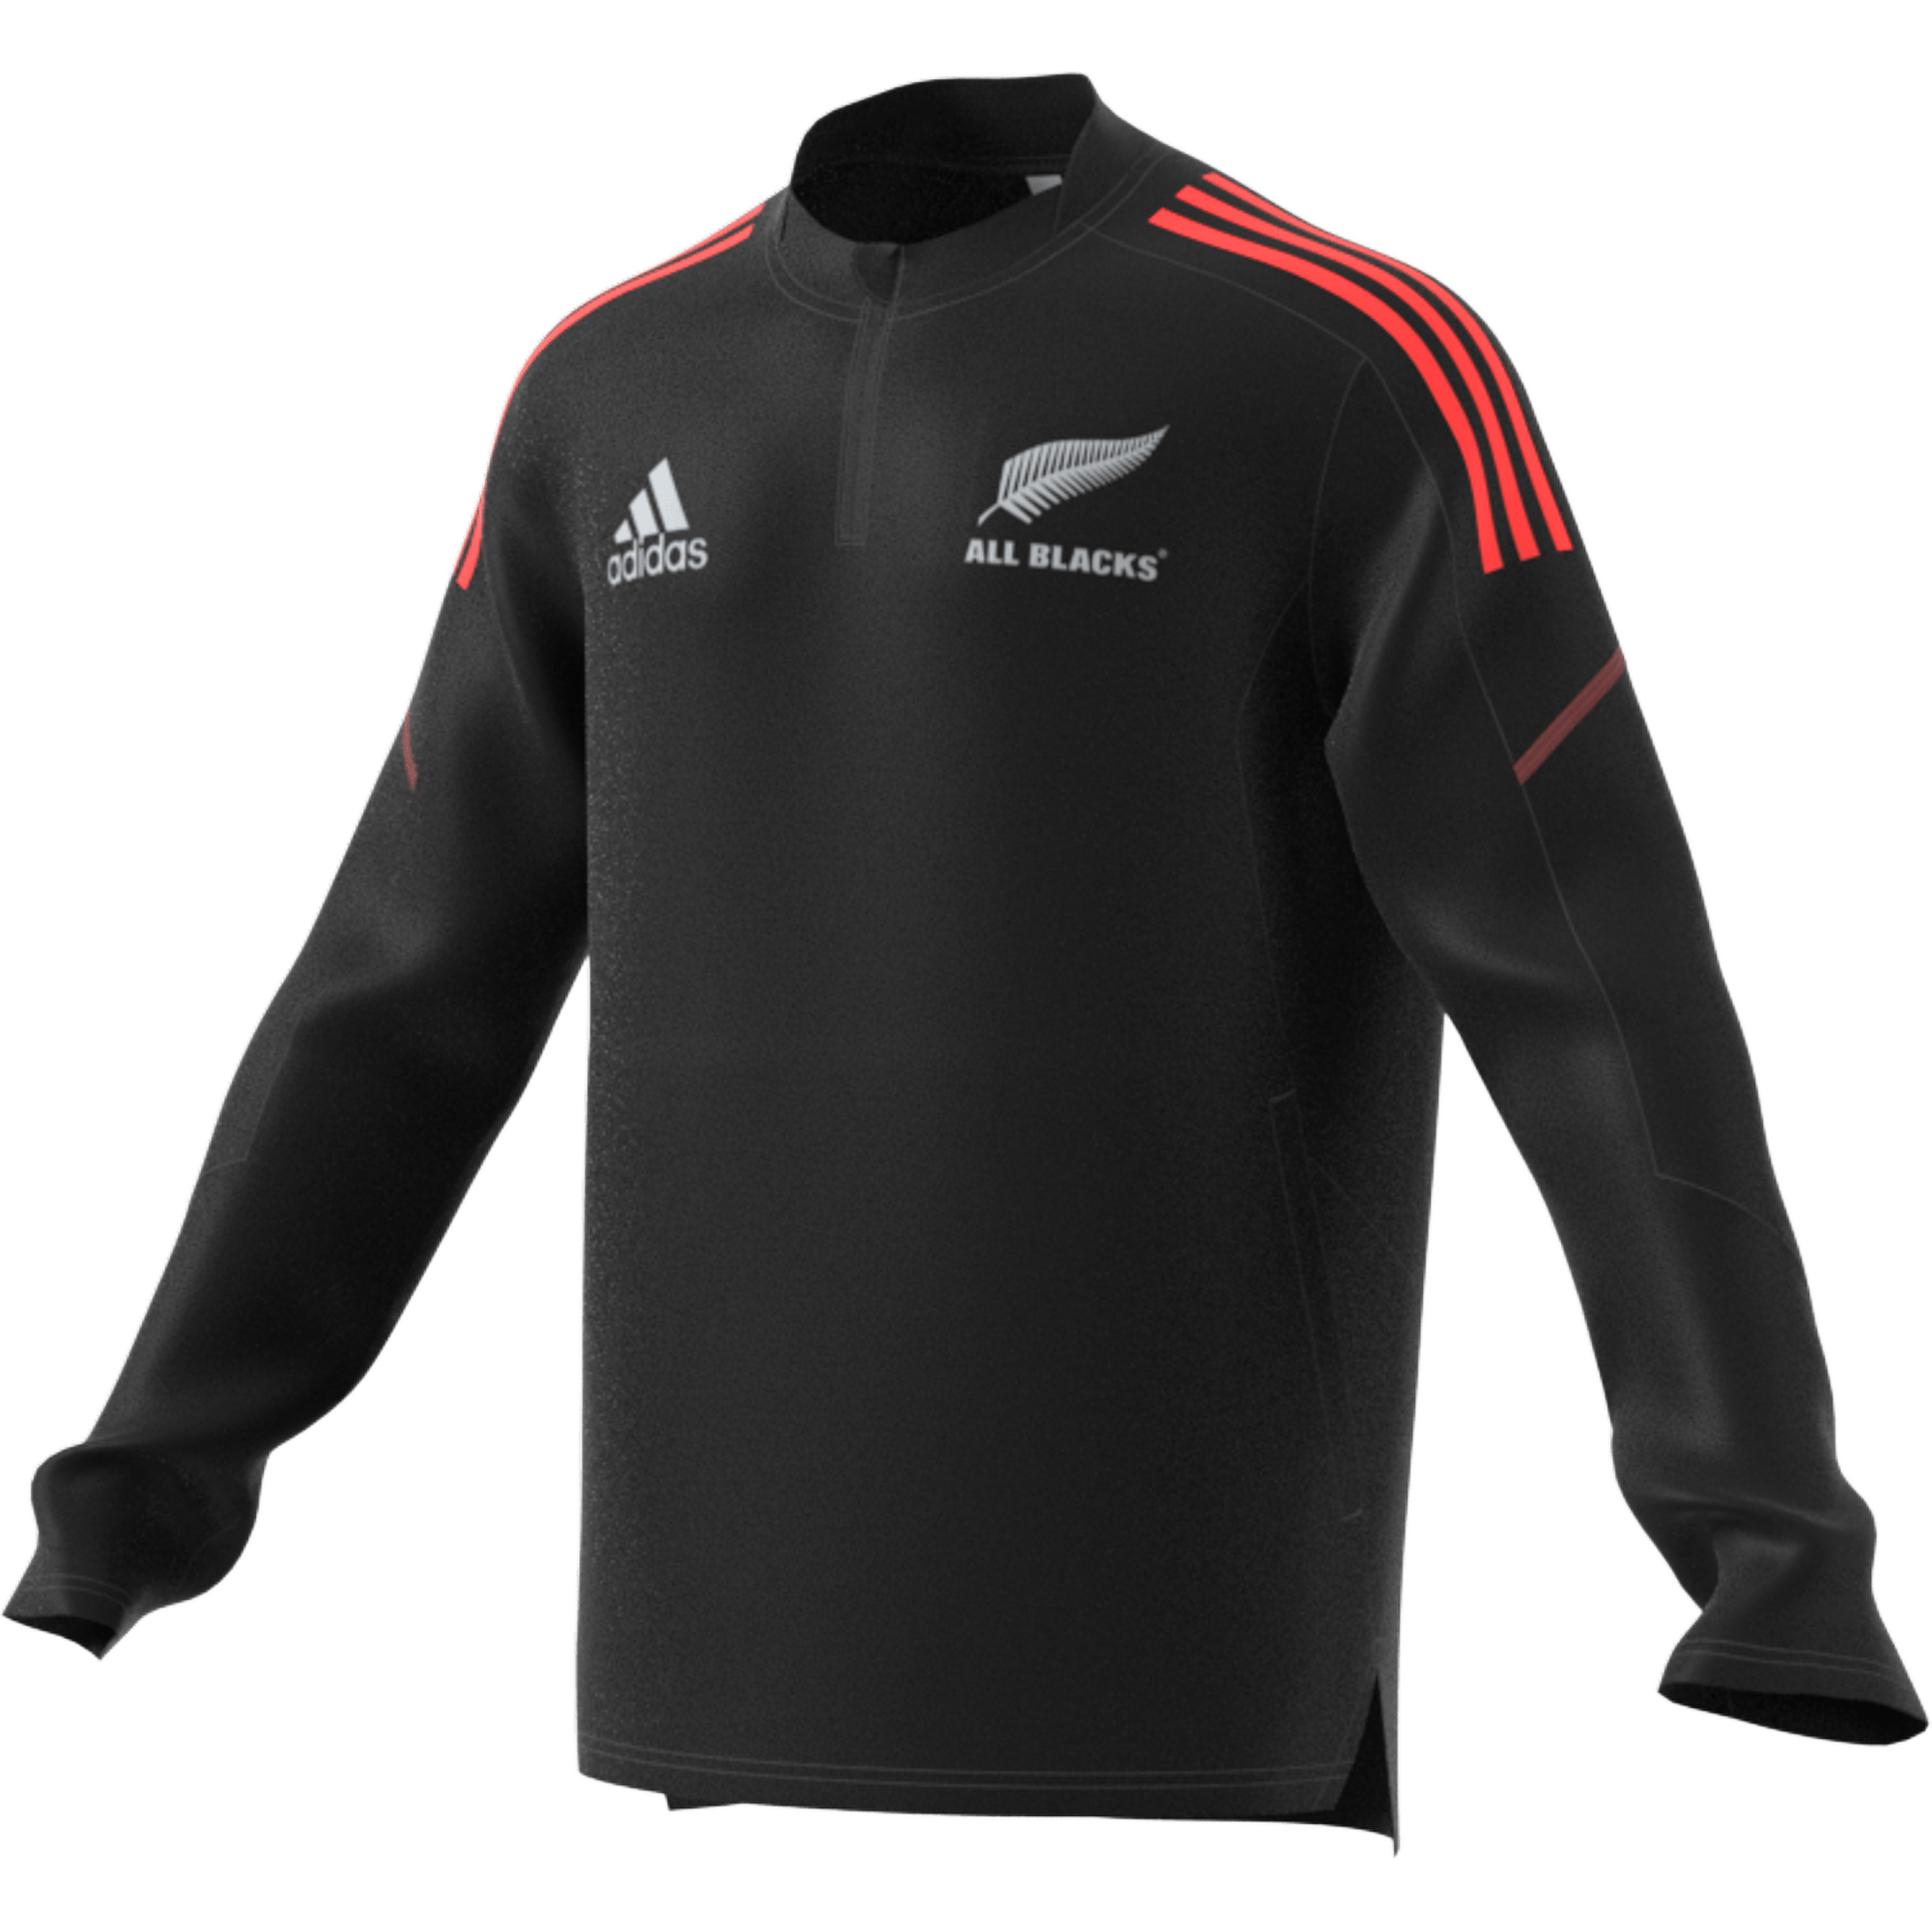 adidas All Blacks Rugby Fleece - World Rugby Shop